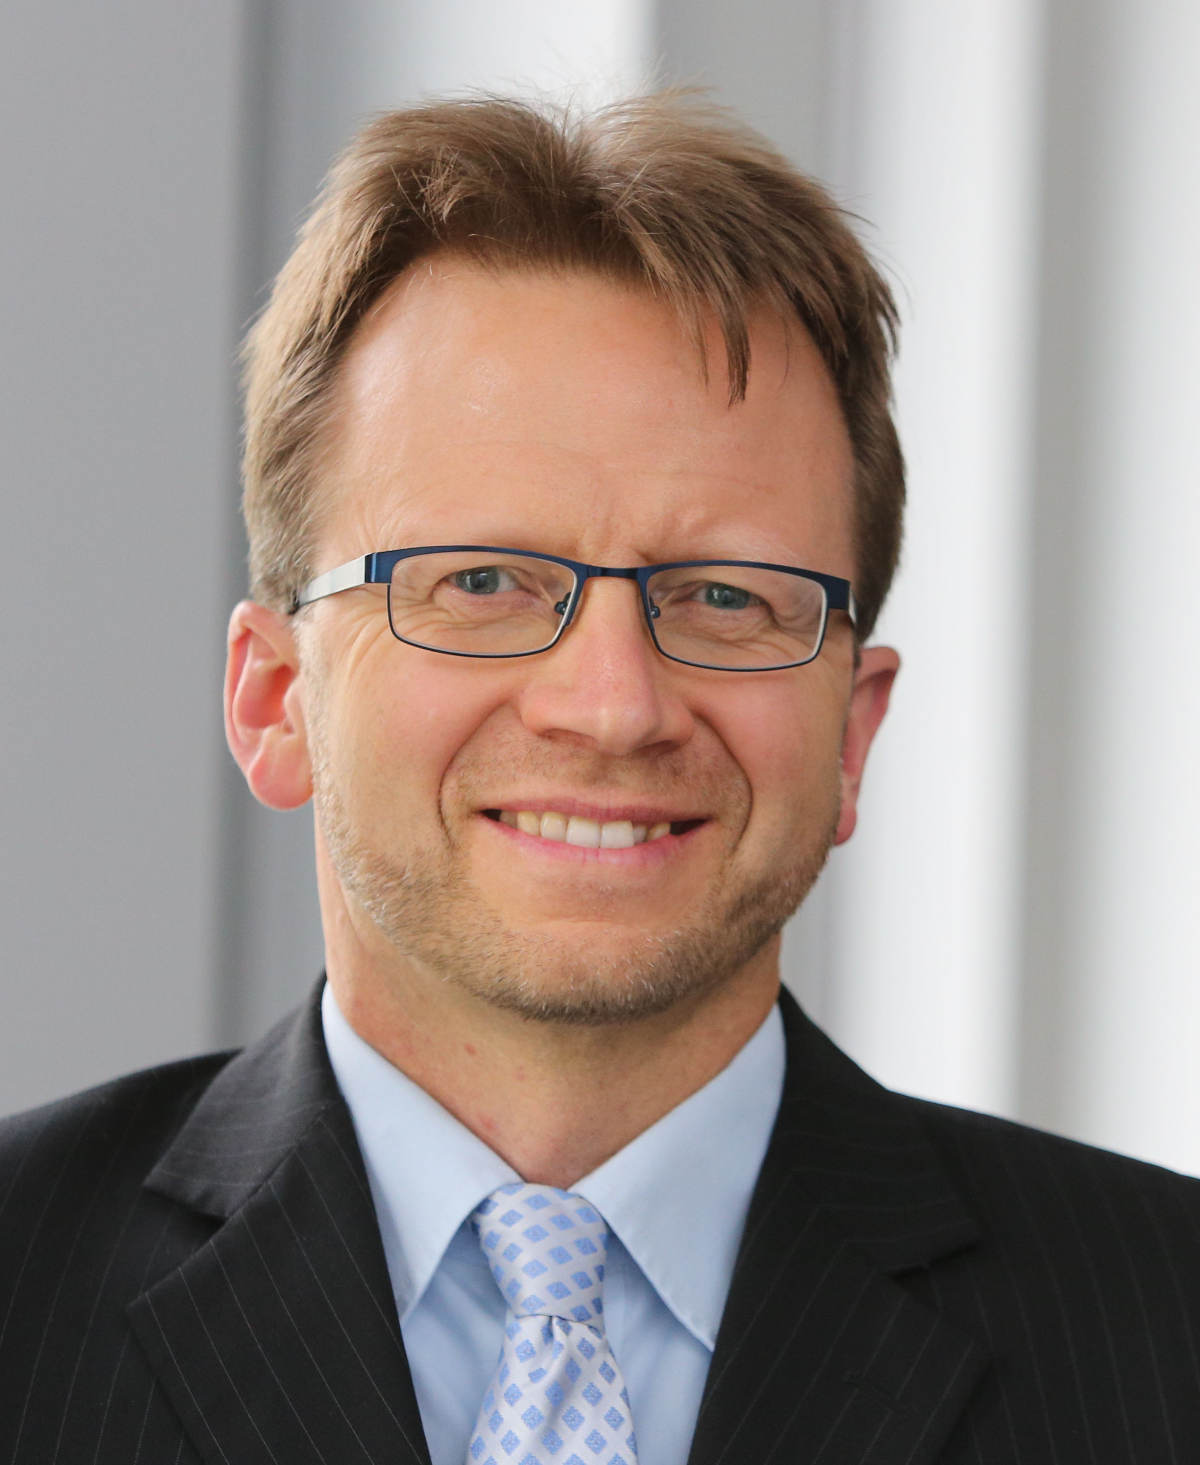 Harald Uphoff ist Stellvertretender Geschäftsführer des Bundesverbands Erneuerbare Energie (BEE) und Geschäftsstellenleiter des Bundesverbands Deutscher Wasserkraftwerke (BDW). (Bild: Harald Uphoff)